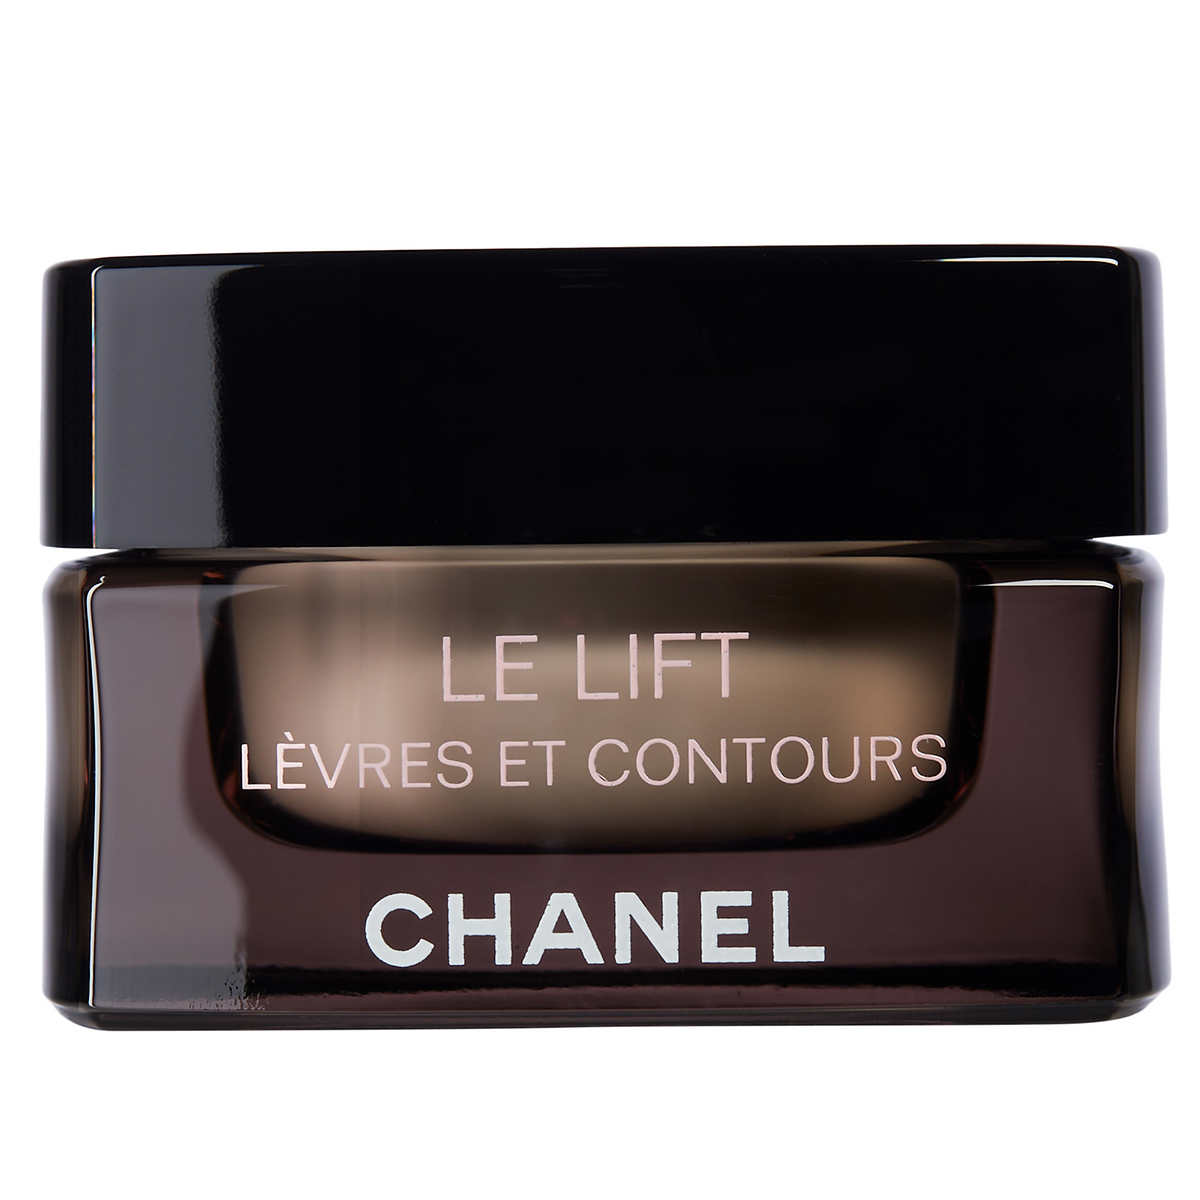 Chanel Le Lift Soin Levres Et Contours, 0.53 oz